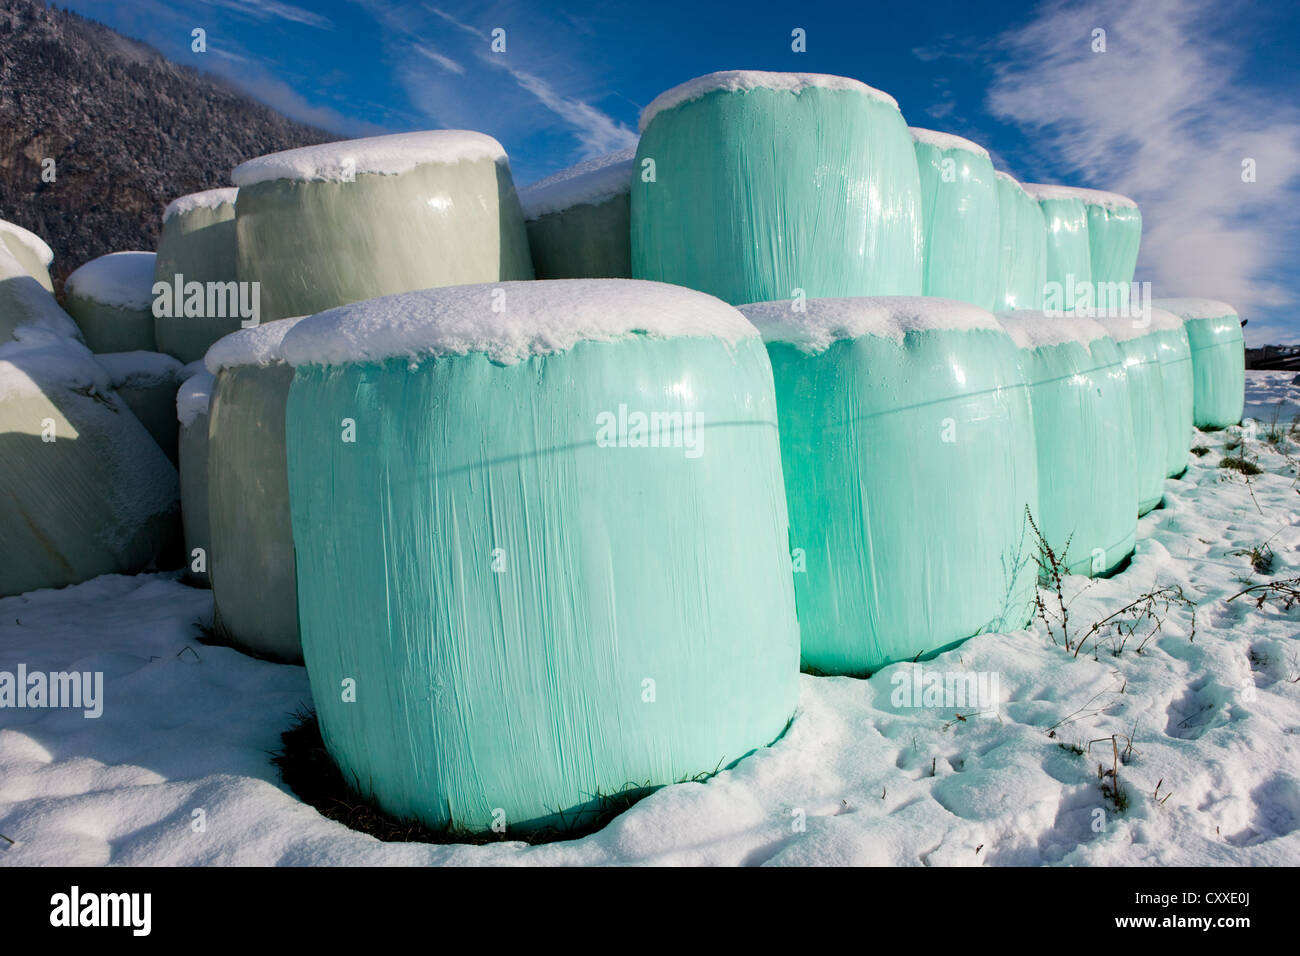 Ballen in Plastik verpackt, im Winter Silage, Nord-Tirol, Austria, Europe Stockfoto